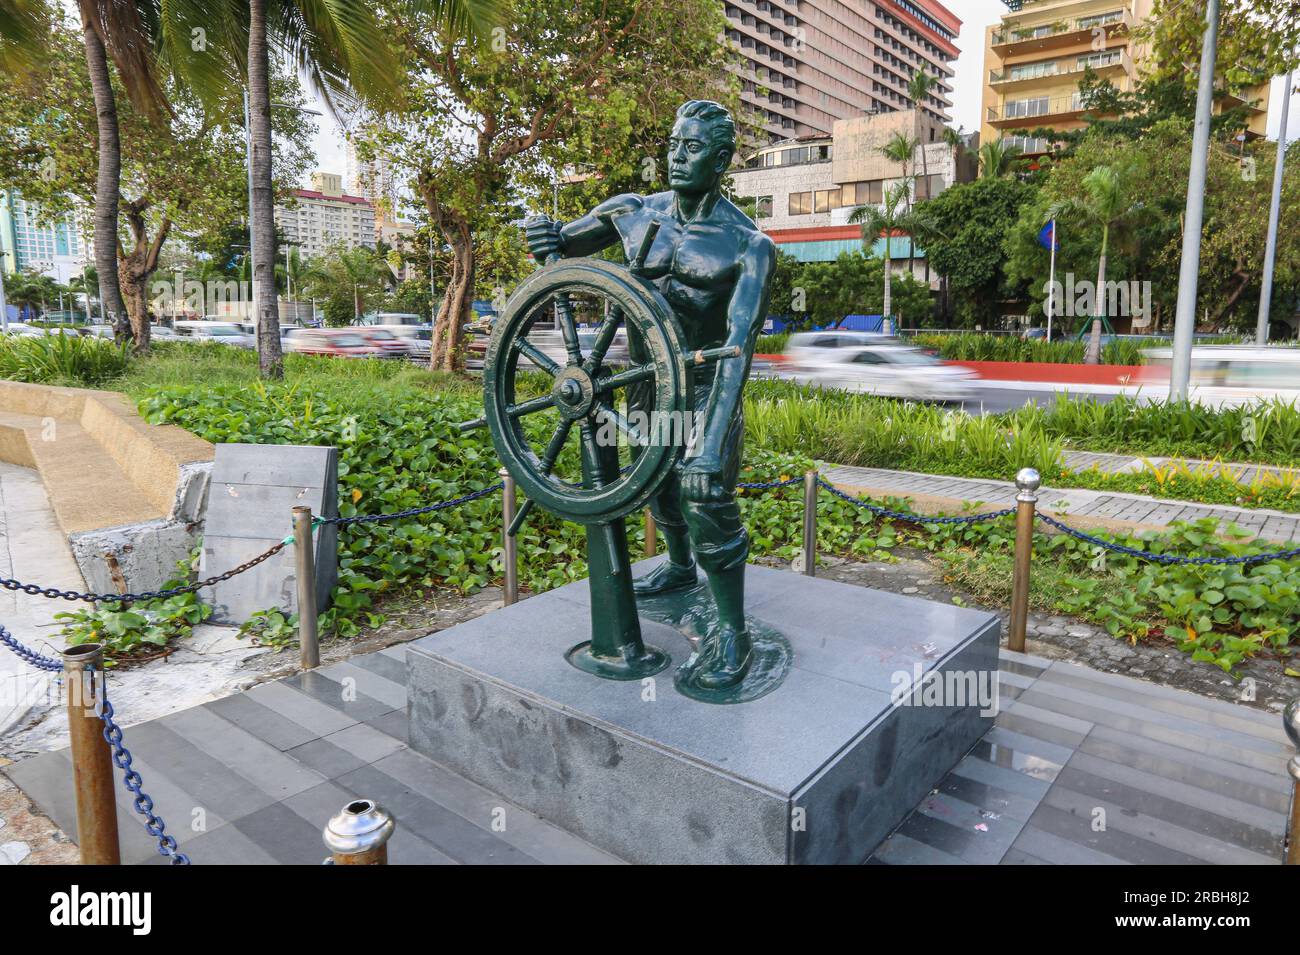 Denkmal der philippinischen Seeleute zu Ehren philippinischer Seeleute, die auf See starben, Seamanstatue mit dem Ruder eines Schiffes, Manila Baywalk, Philippinen Stockfoto